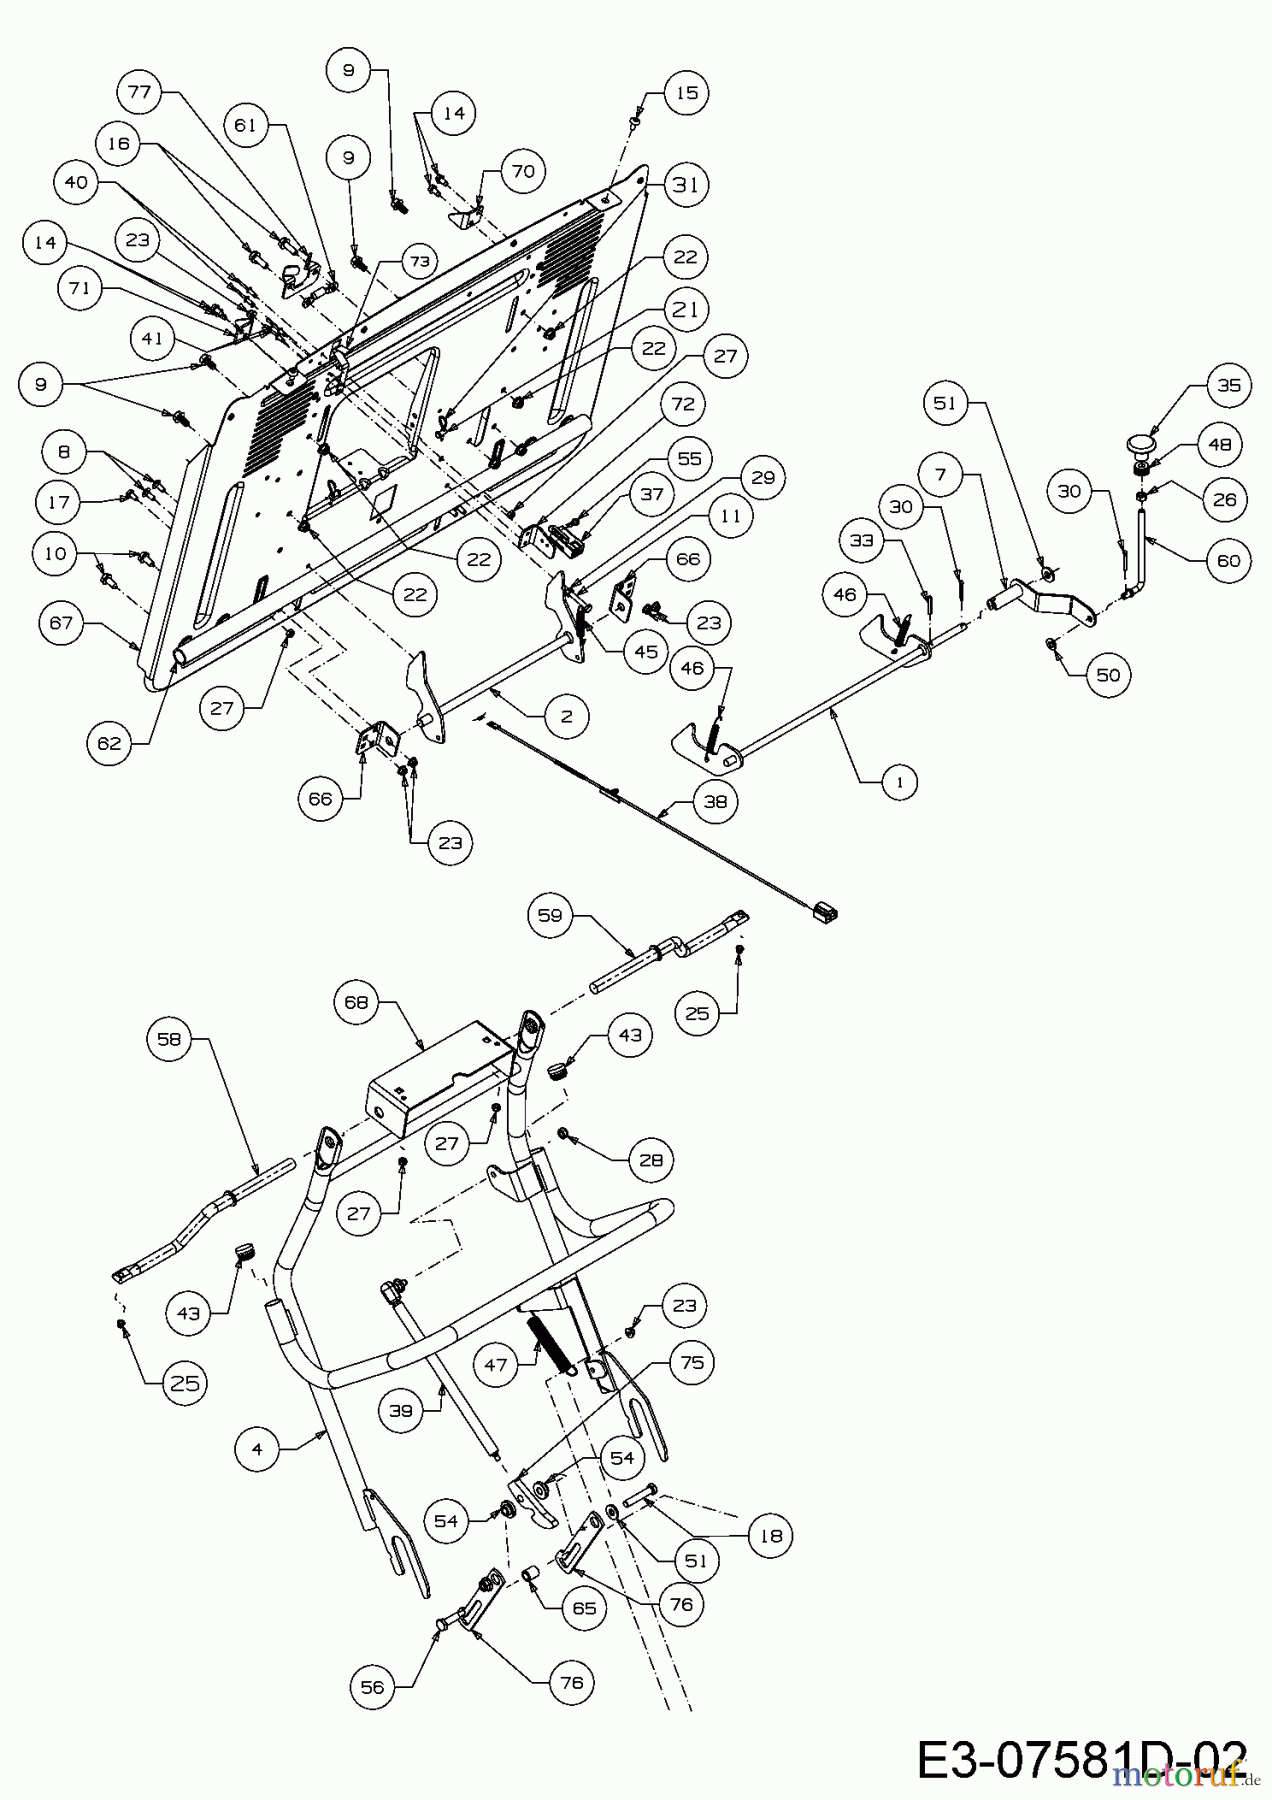  Massey Ferguson Rasentraktoren MF 41-22 RD 13HP91GN395  (2016) Aushebung Grasfangsack, Heckplatte